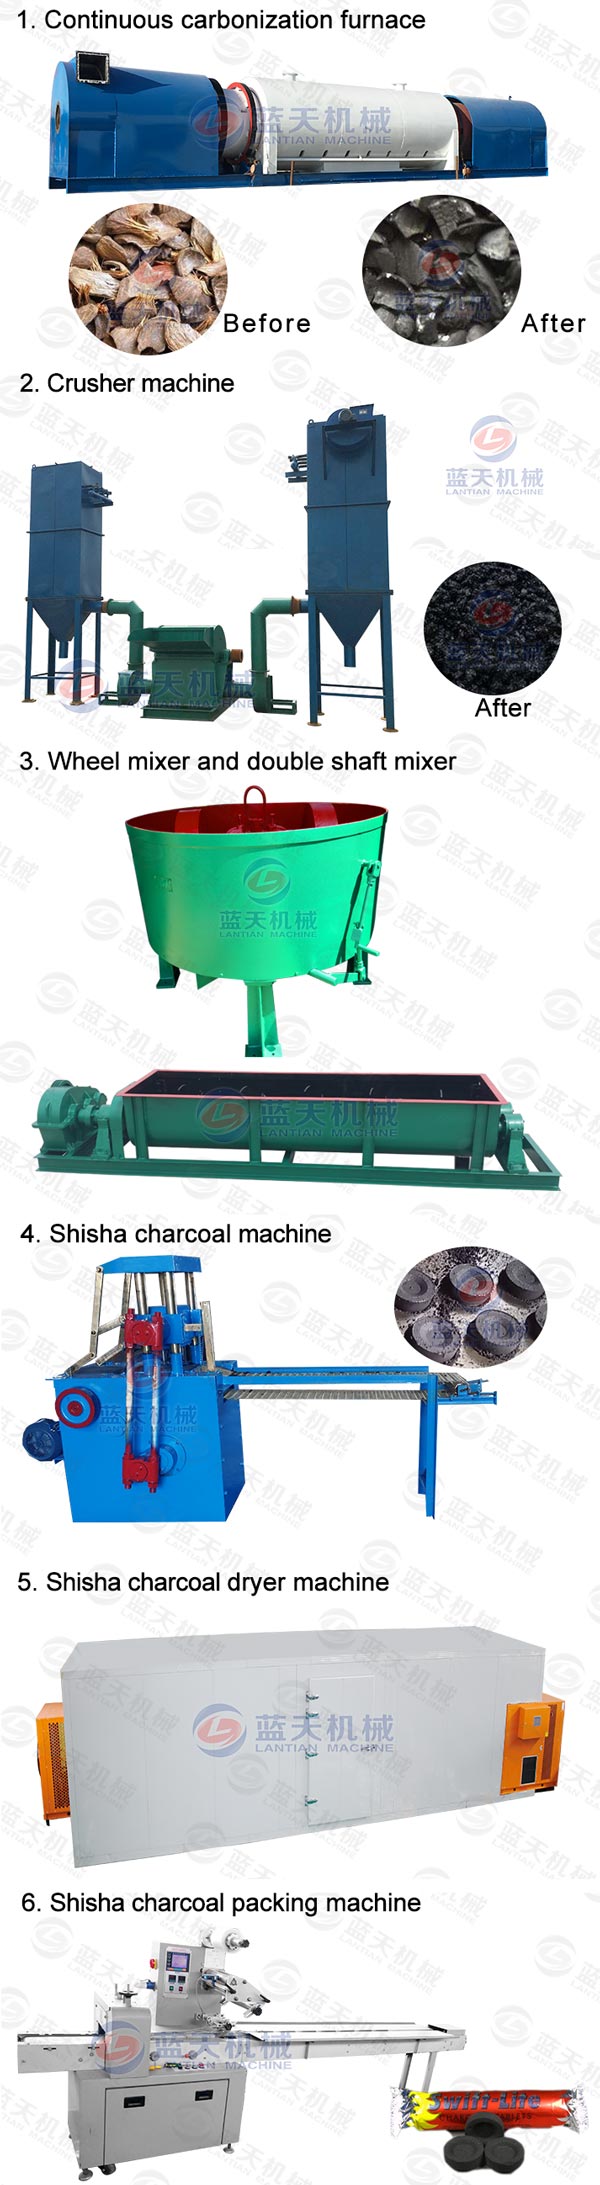 shisha charcoal briquettes machine production line